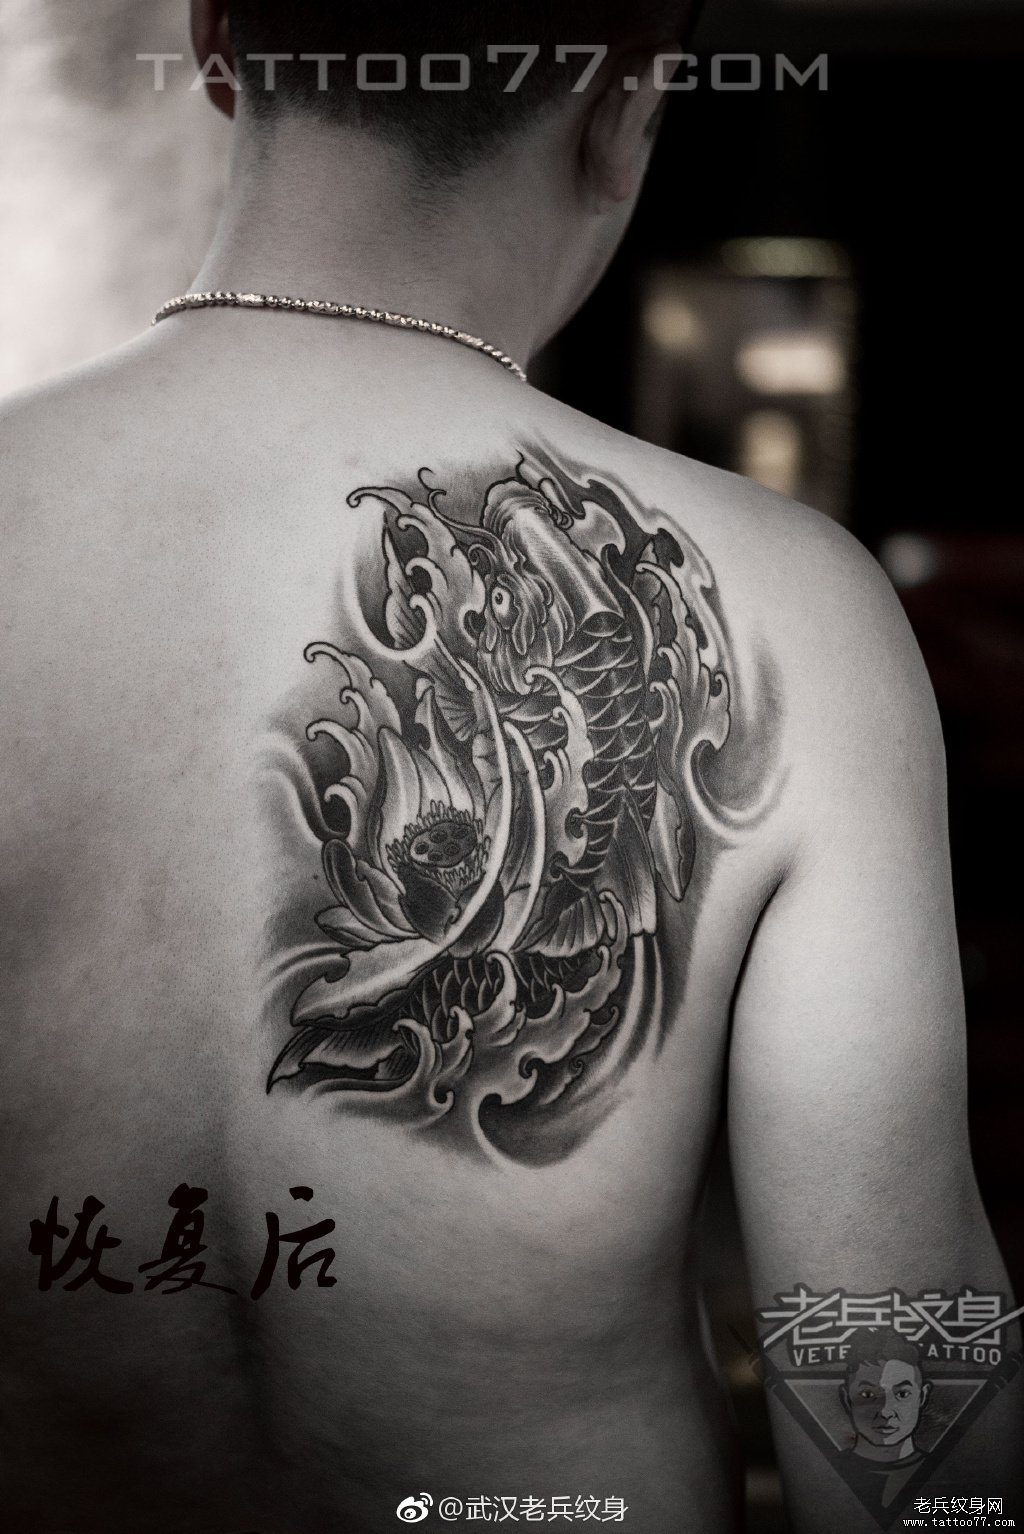 武汉纹身店打造的后背鲤鱼莲花纹身图案作品